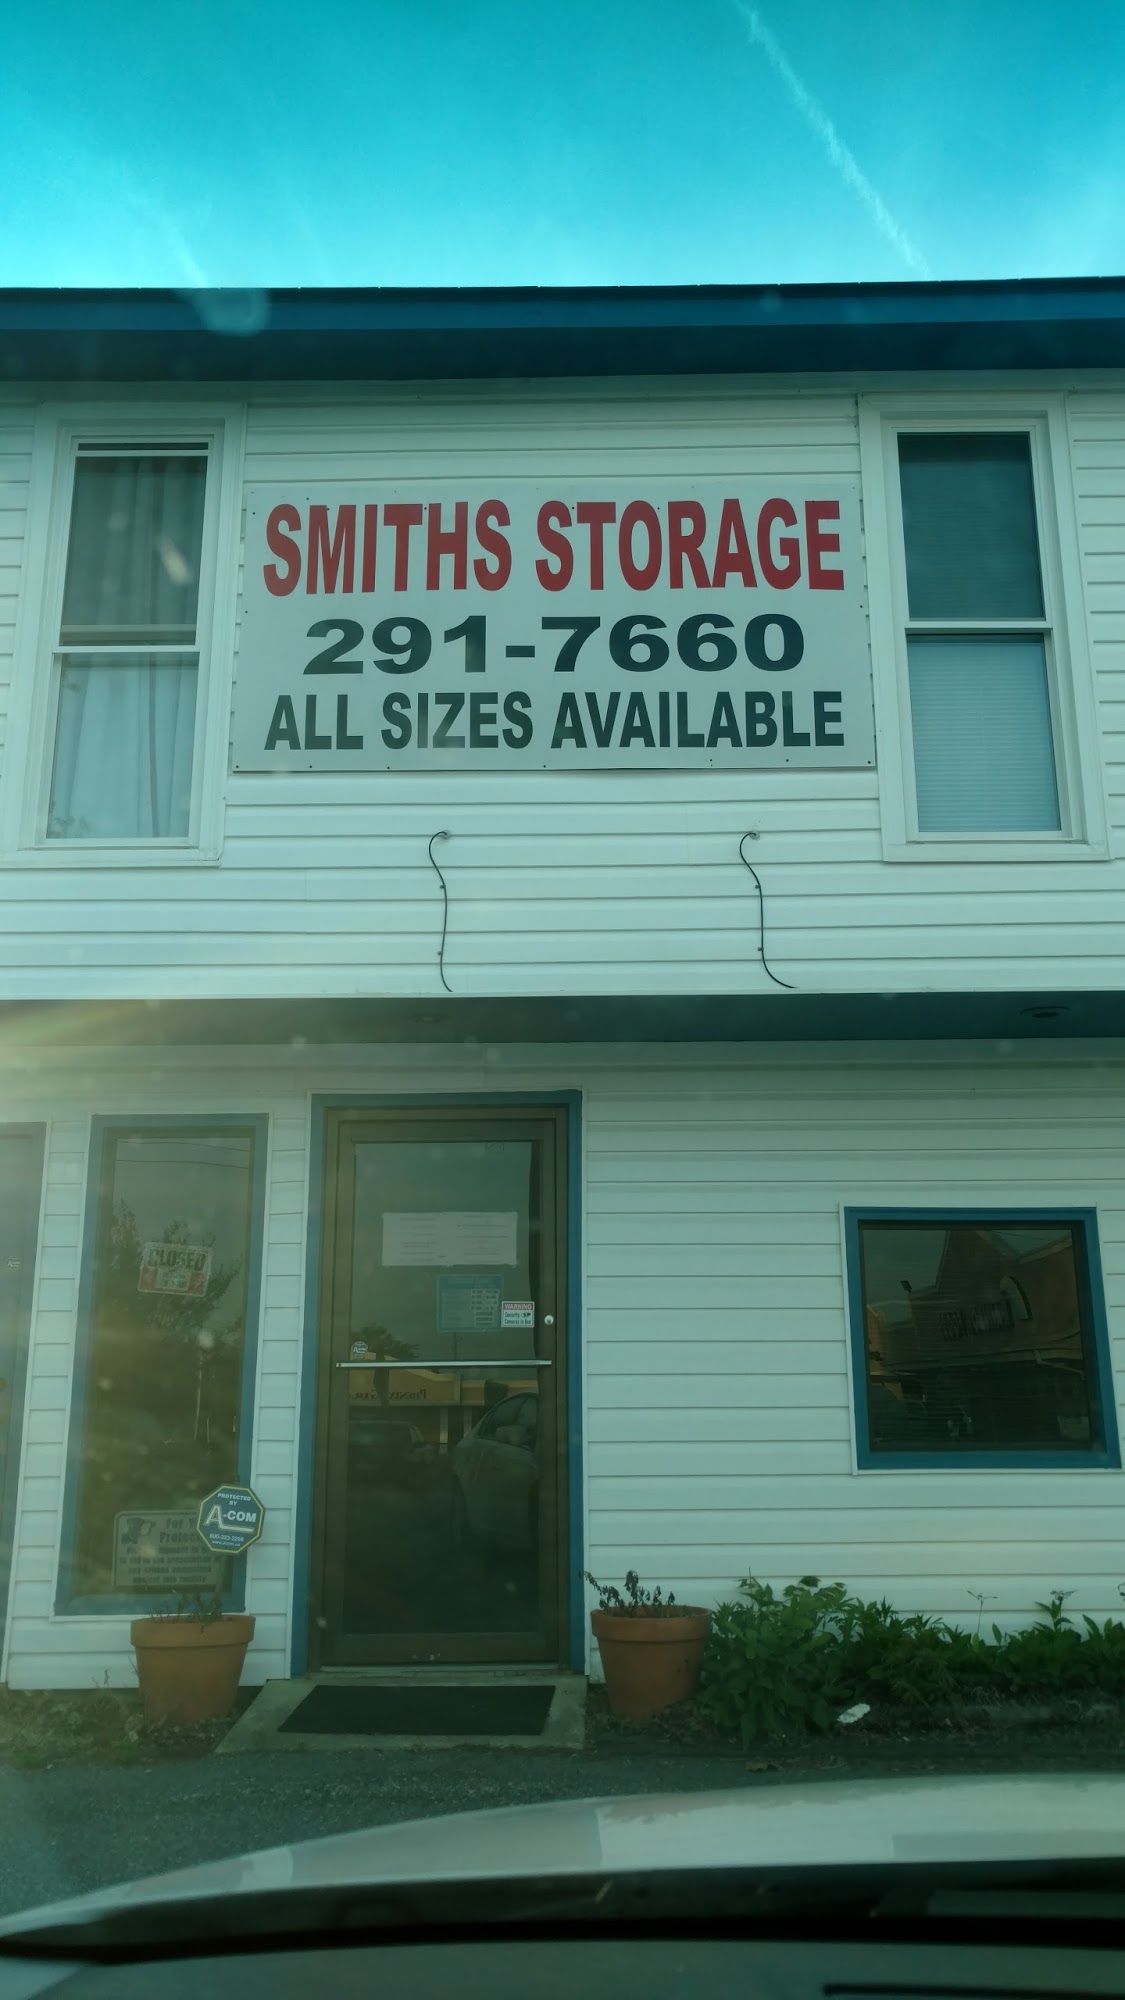 Smith's Storage